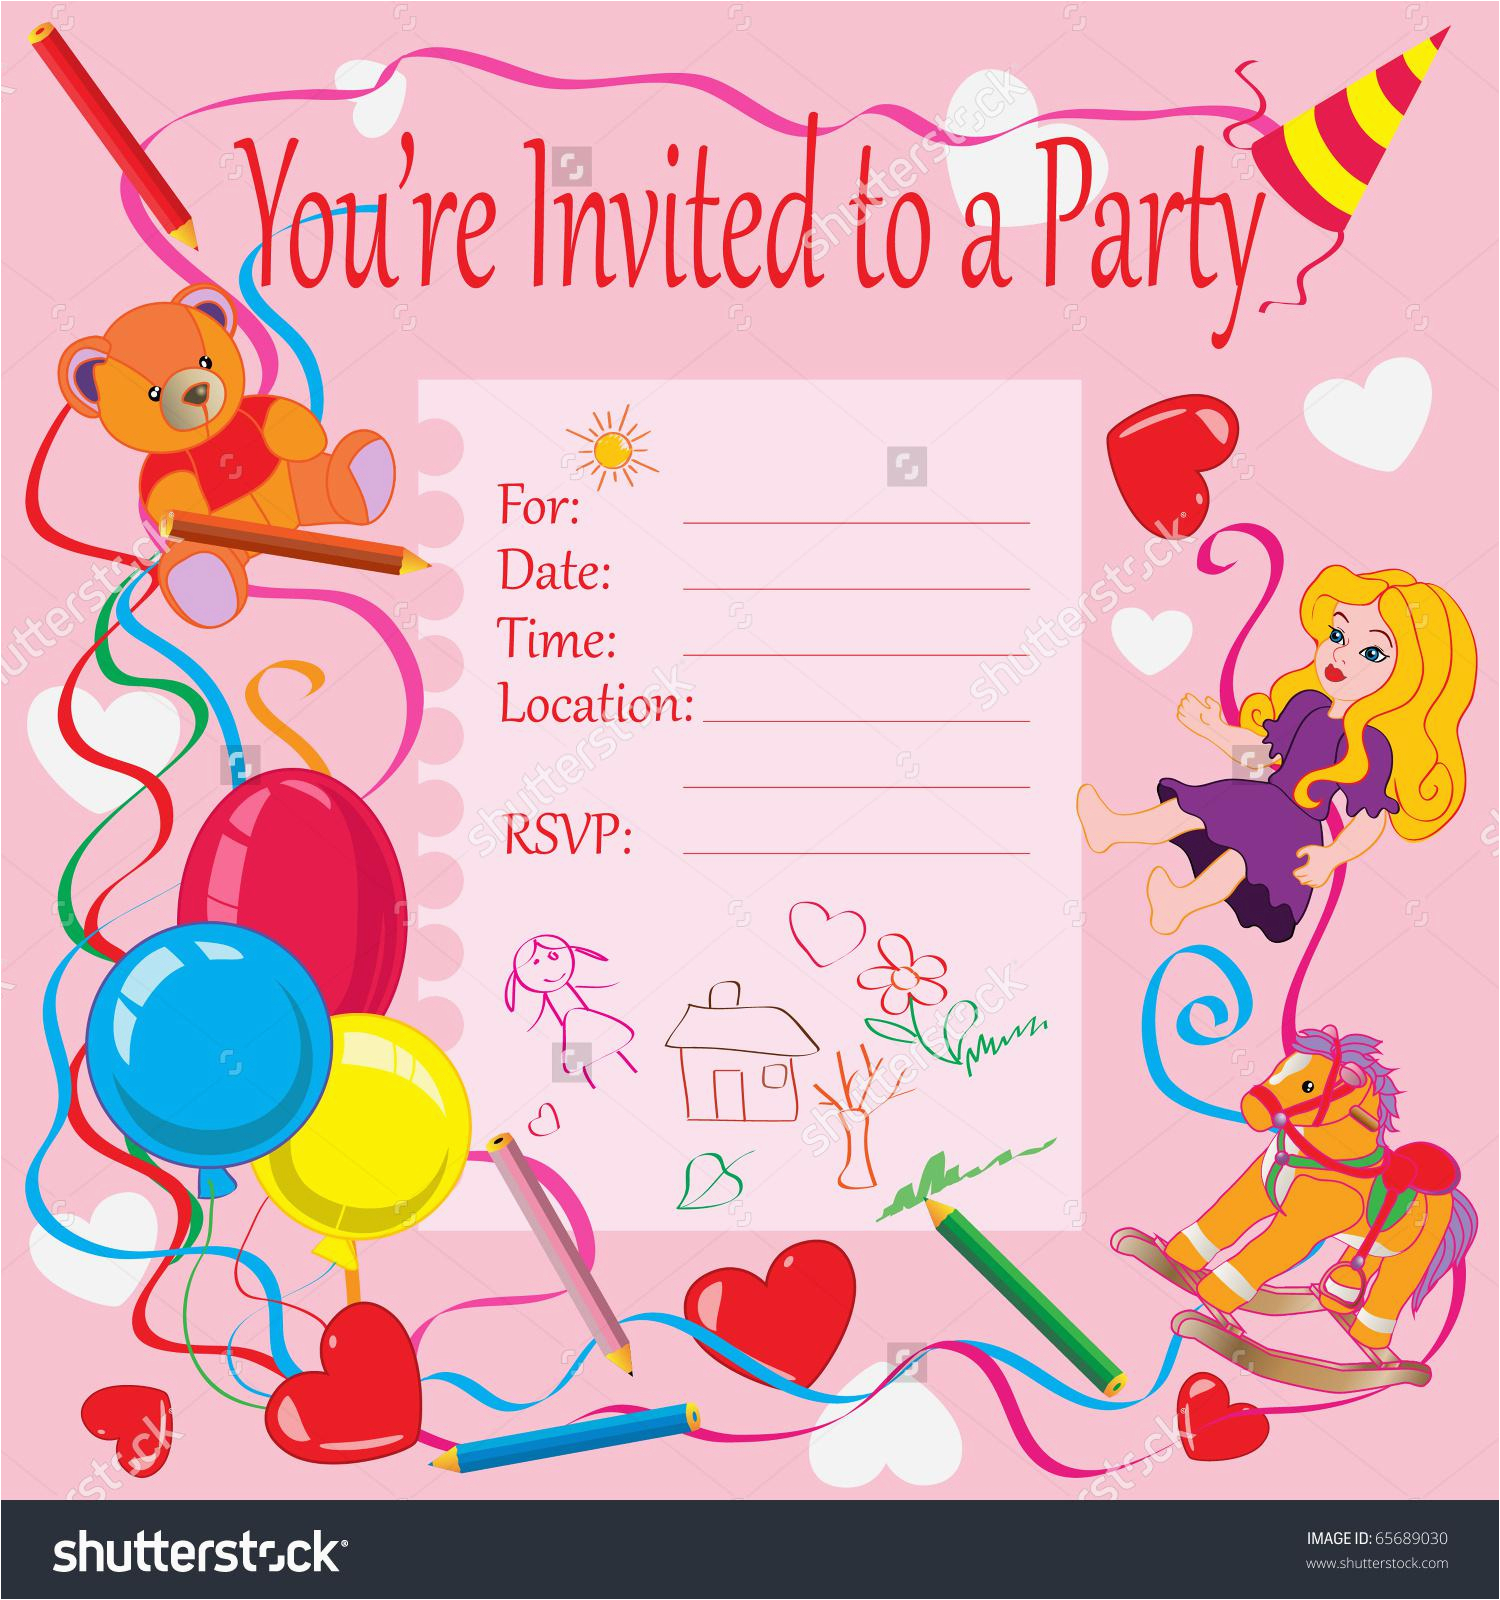 How to Make Online Birthday Invitation Card | BirthdayBuzz